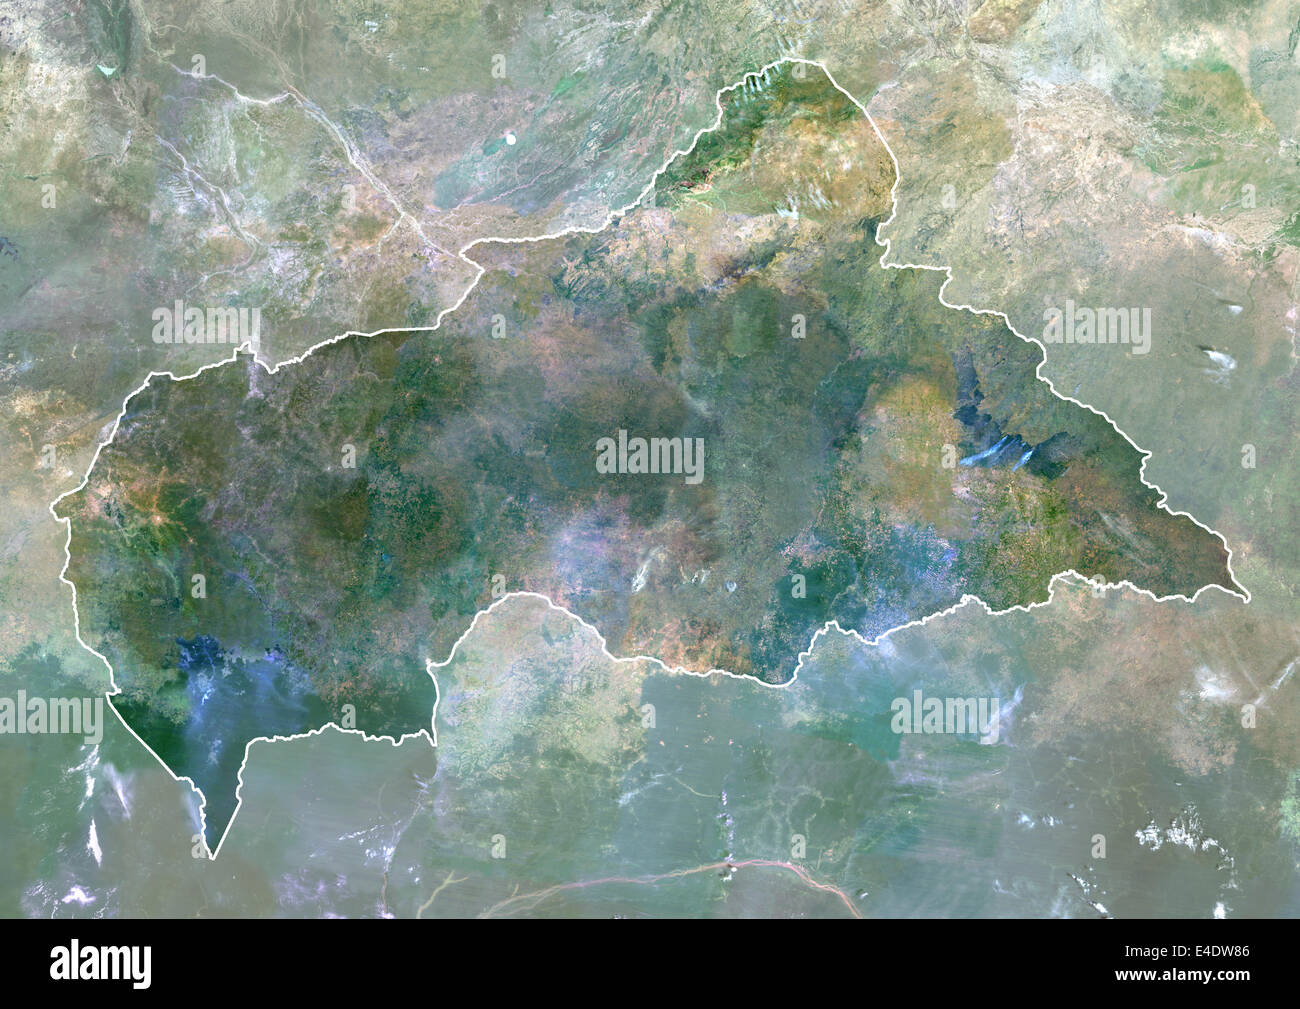 Zentralafrikanische Republik, Afrika, Echtfarben-Satellitenbild mit Rand und Maske. Satelliten-Ansicht der Zentralafrikanischen Republik) Stockfoto